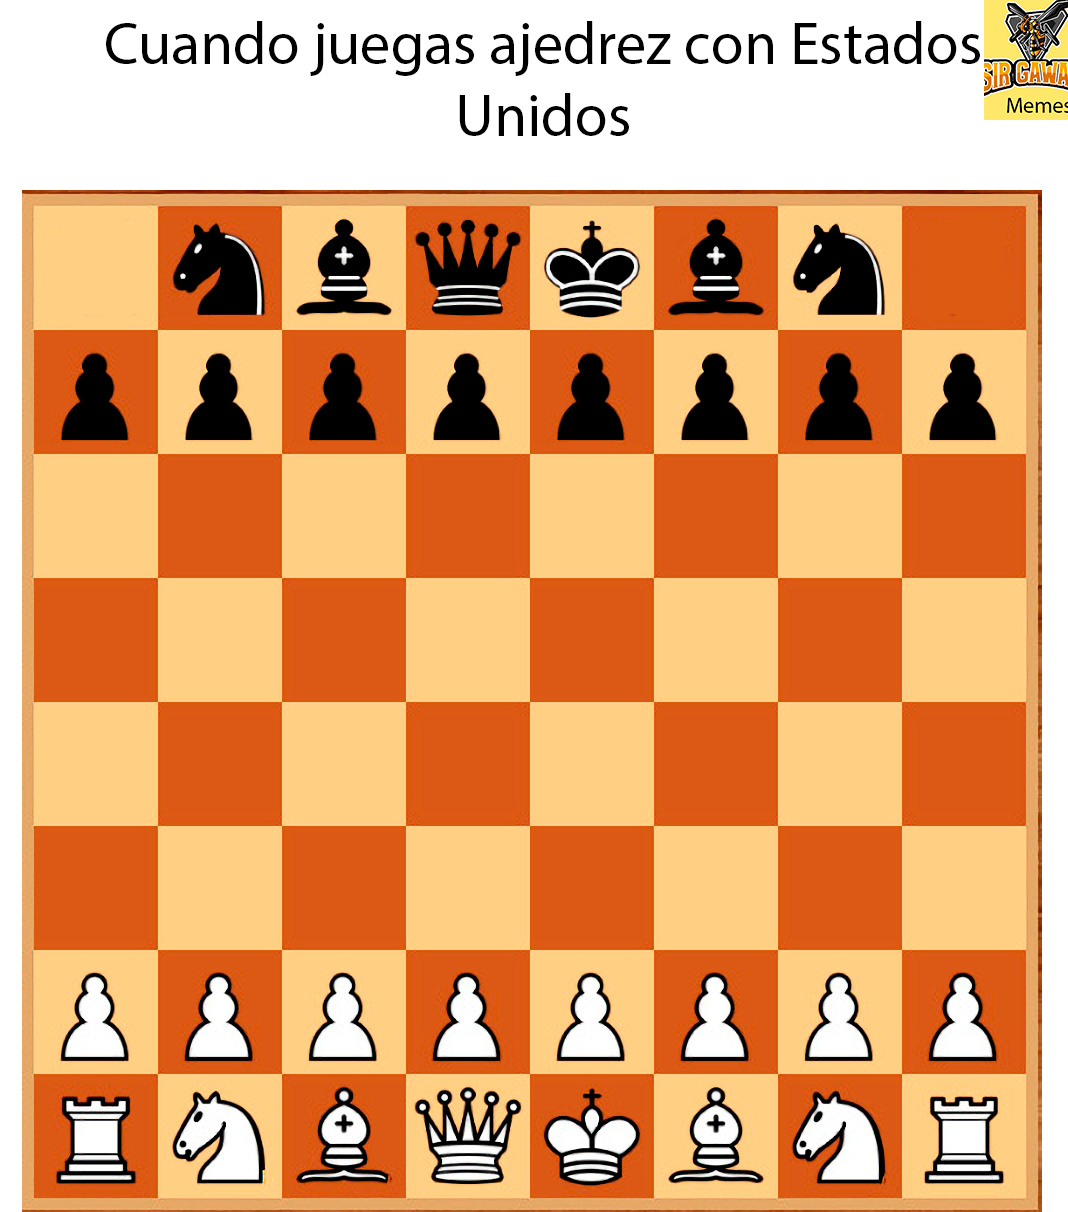 explicación: Estados Unidos no puede jugar ajedrez porque no tiene torres (el incidente de las torres gemelas) - meme